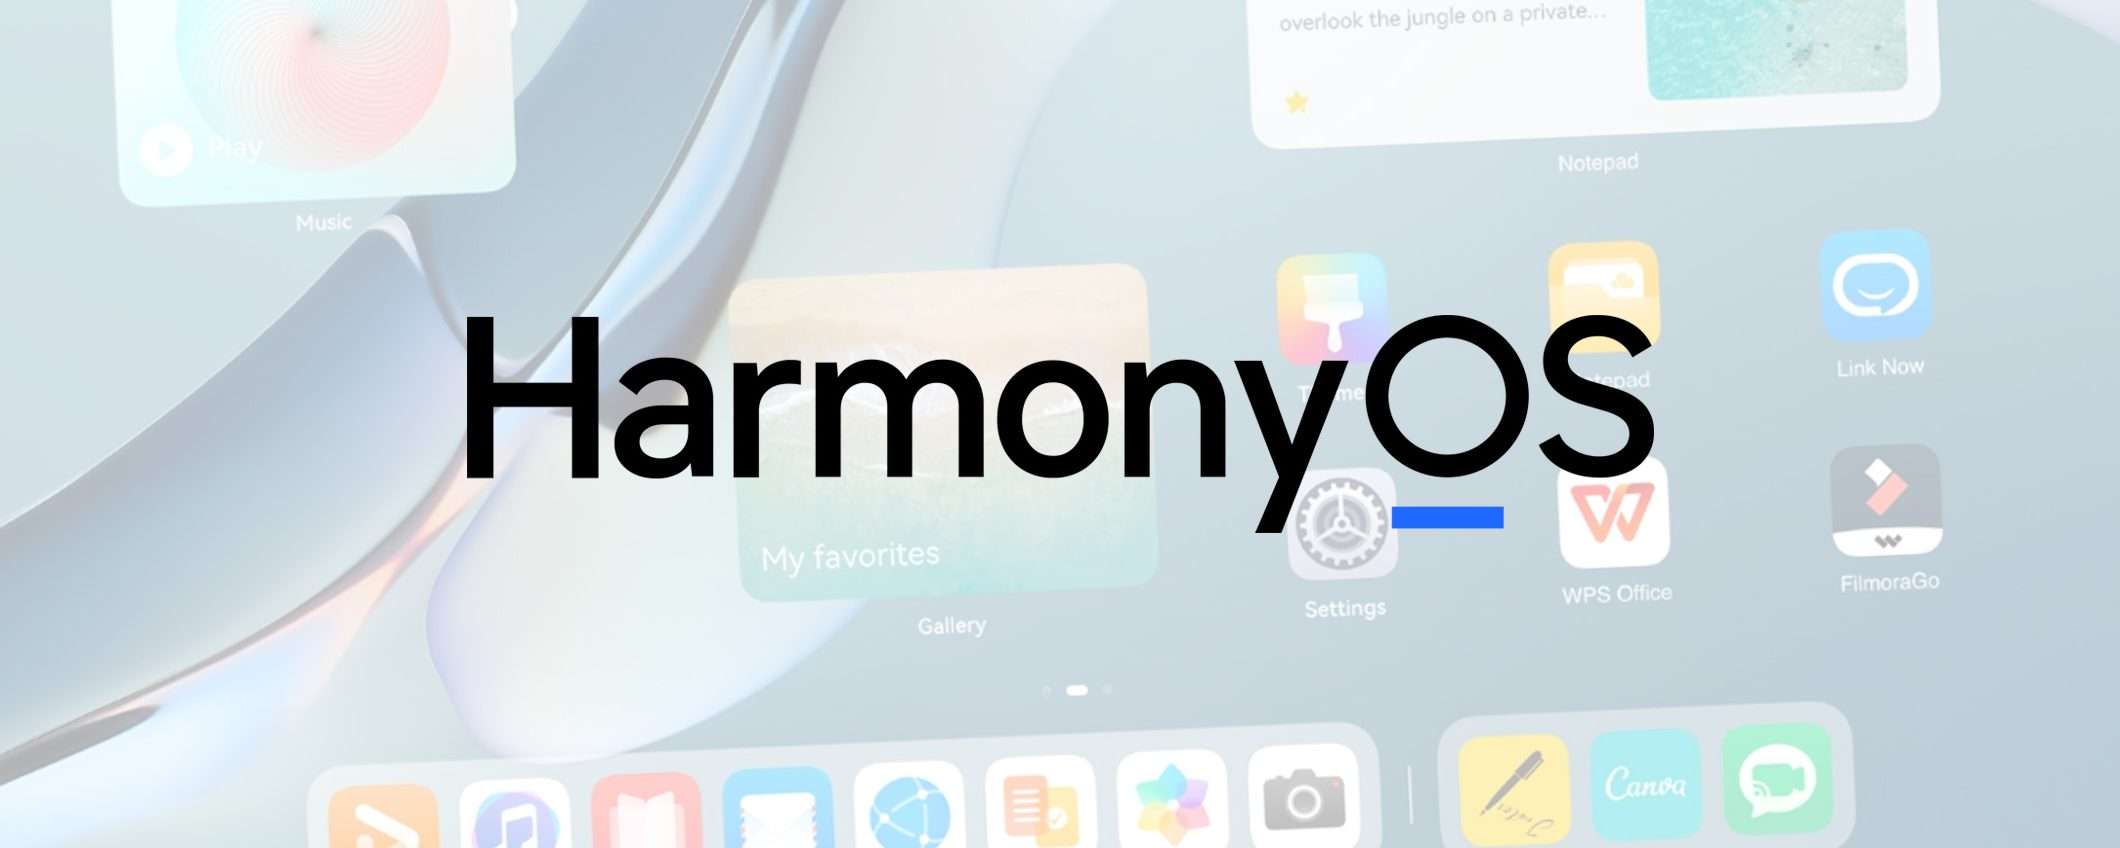 HarmonyOS: come sta andando il sistema operativo?